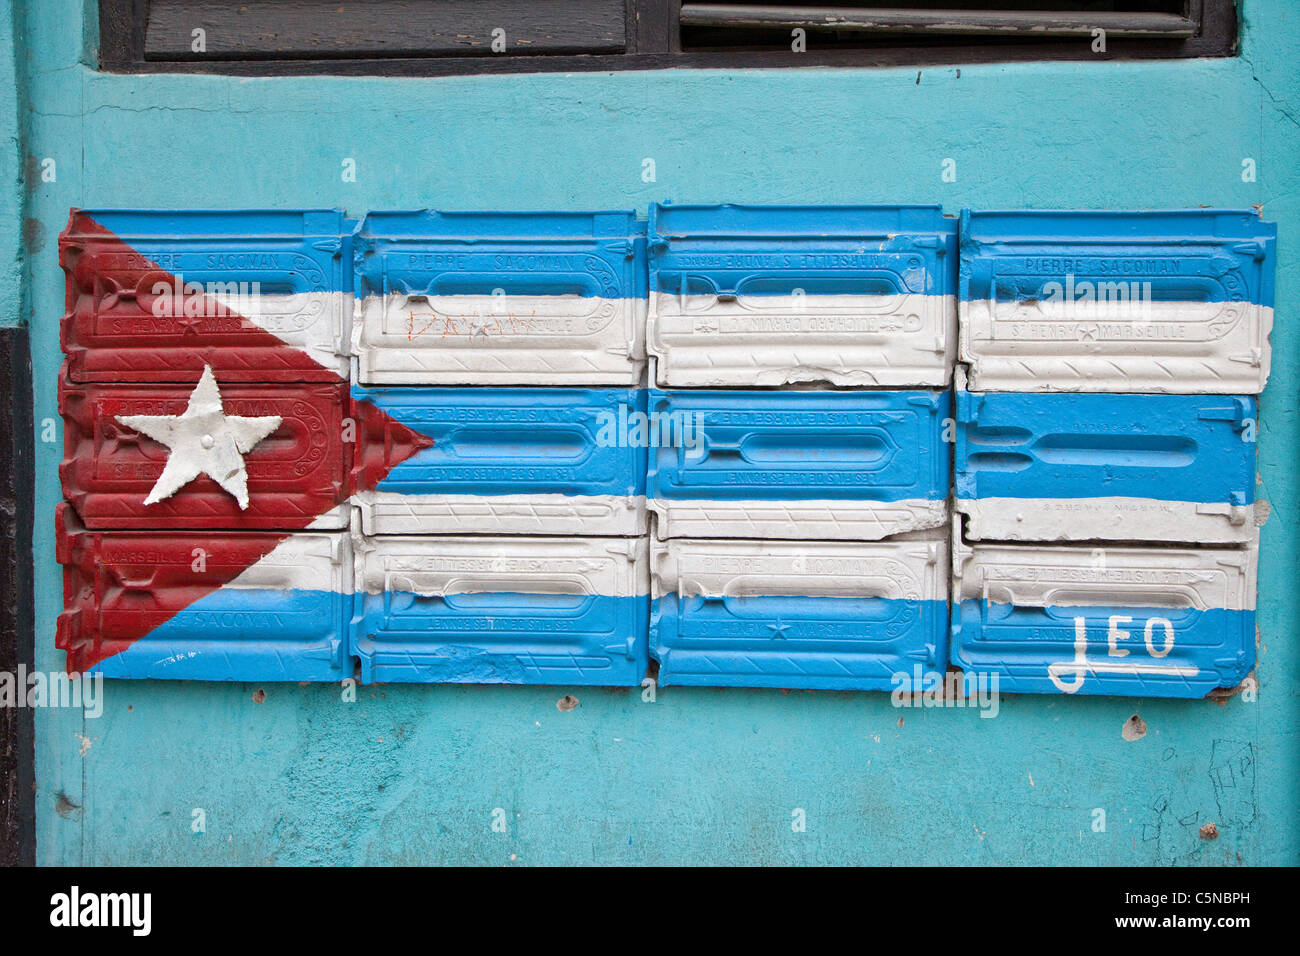 Cuba, Havana. Cuban Flag Painted On Side of Building as Decoration, Central Havana. Stock Photo